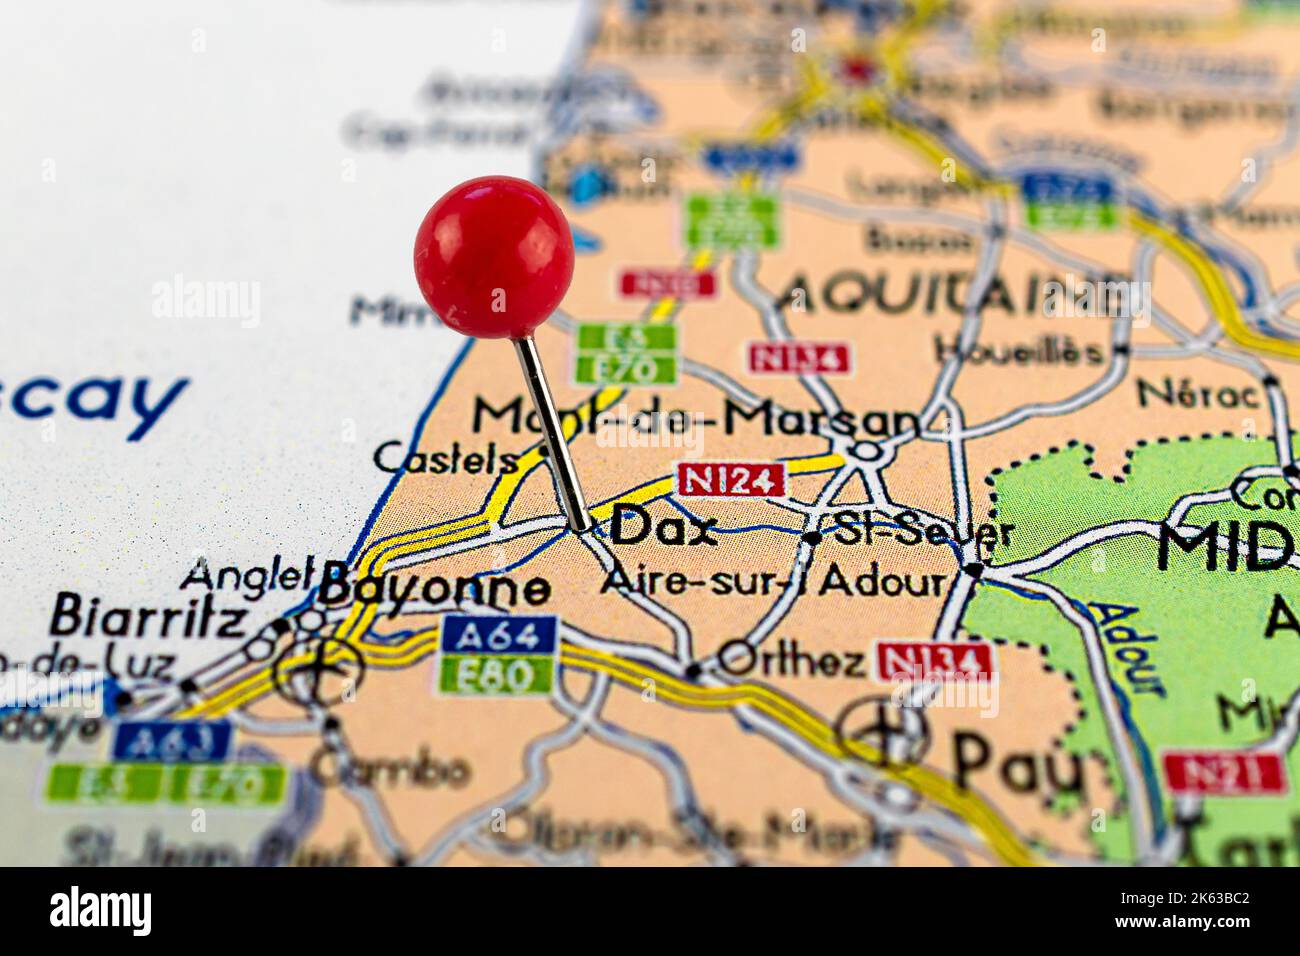 DAX-Karte. Nahaufnahme der Dax-Karte mit roter Nadel. Karte mit rotem Nadelpunkt von Dax in Frankreich. Stockfoto